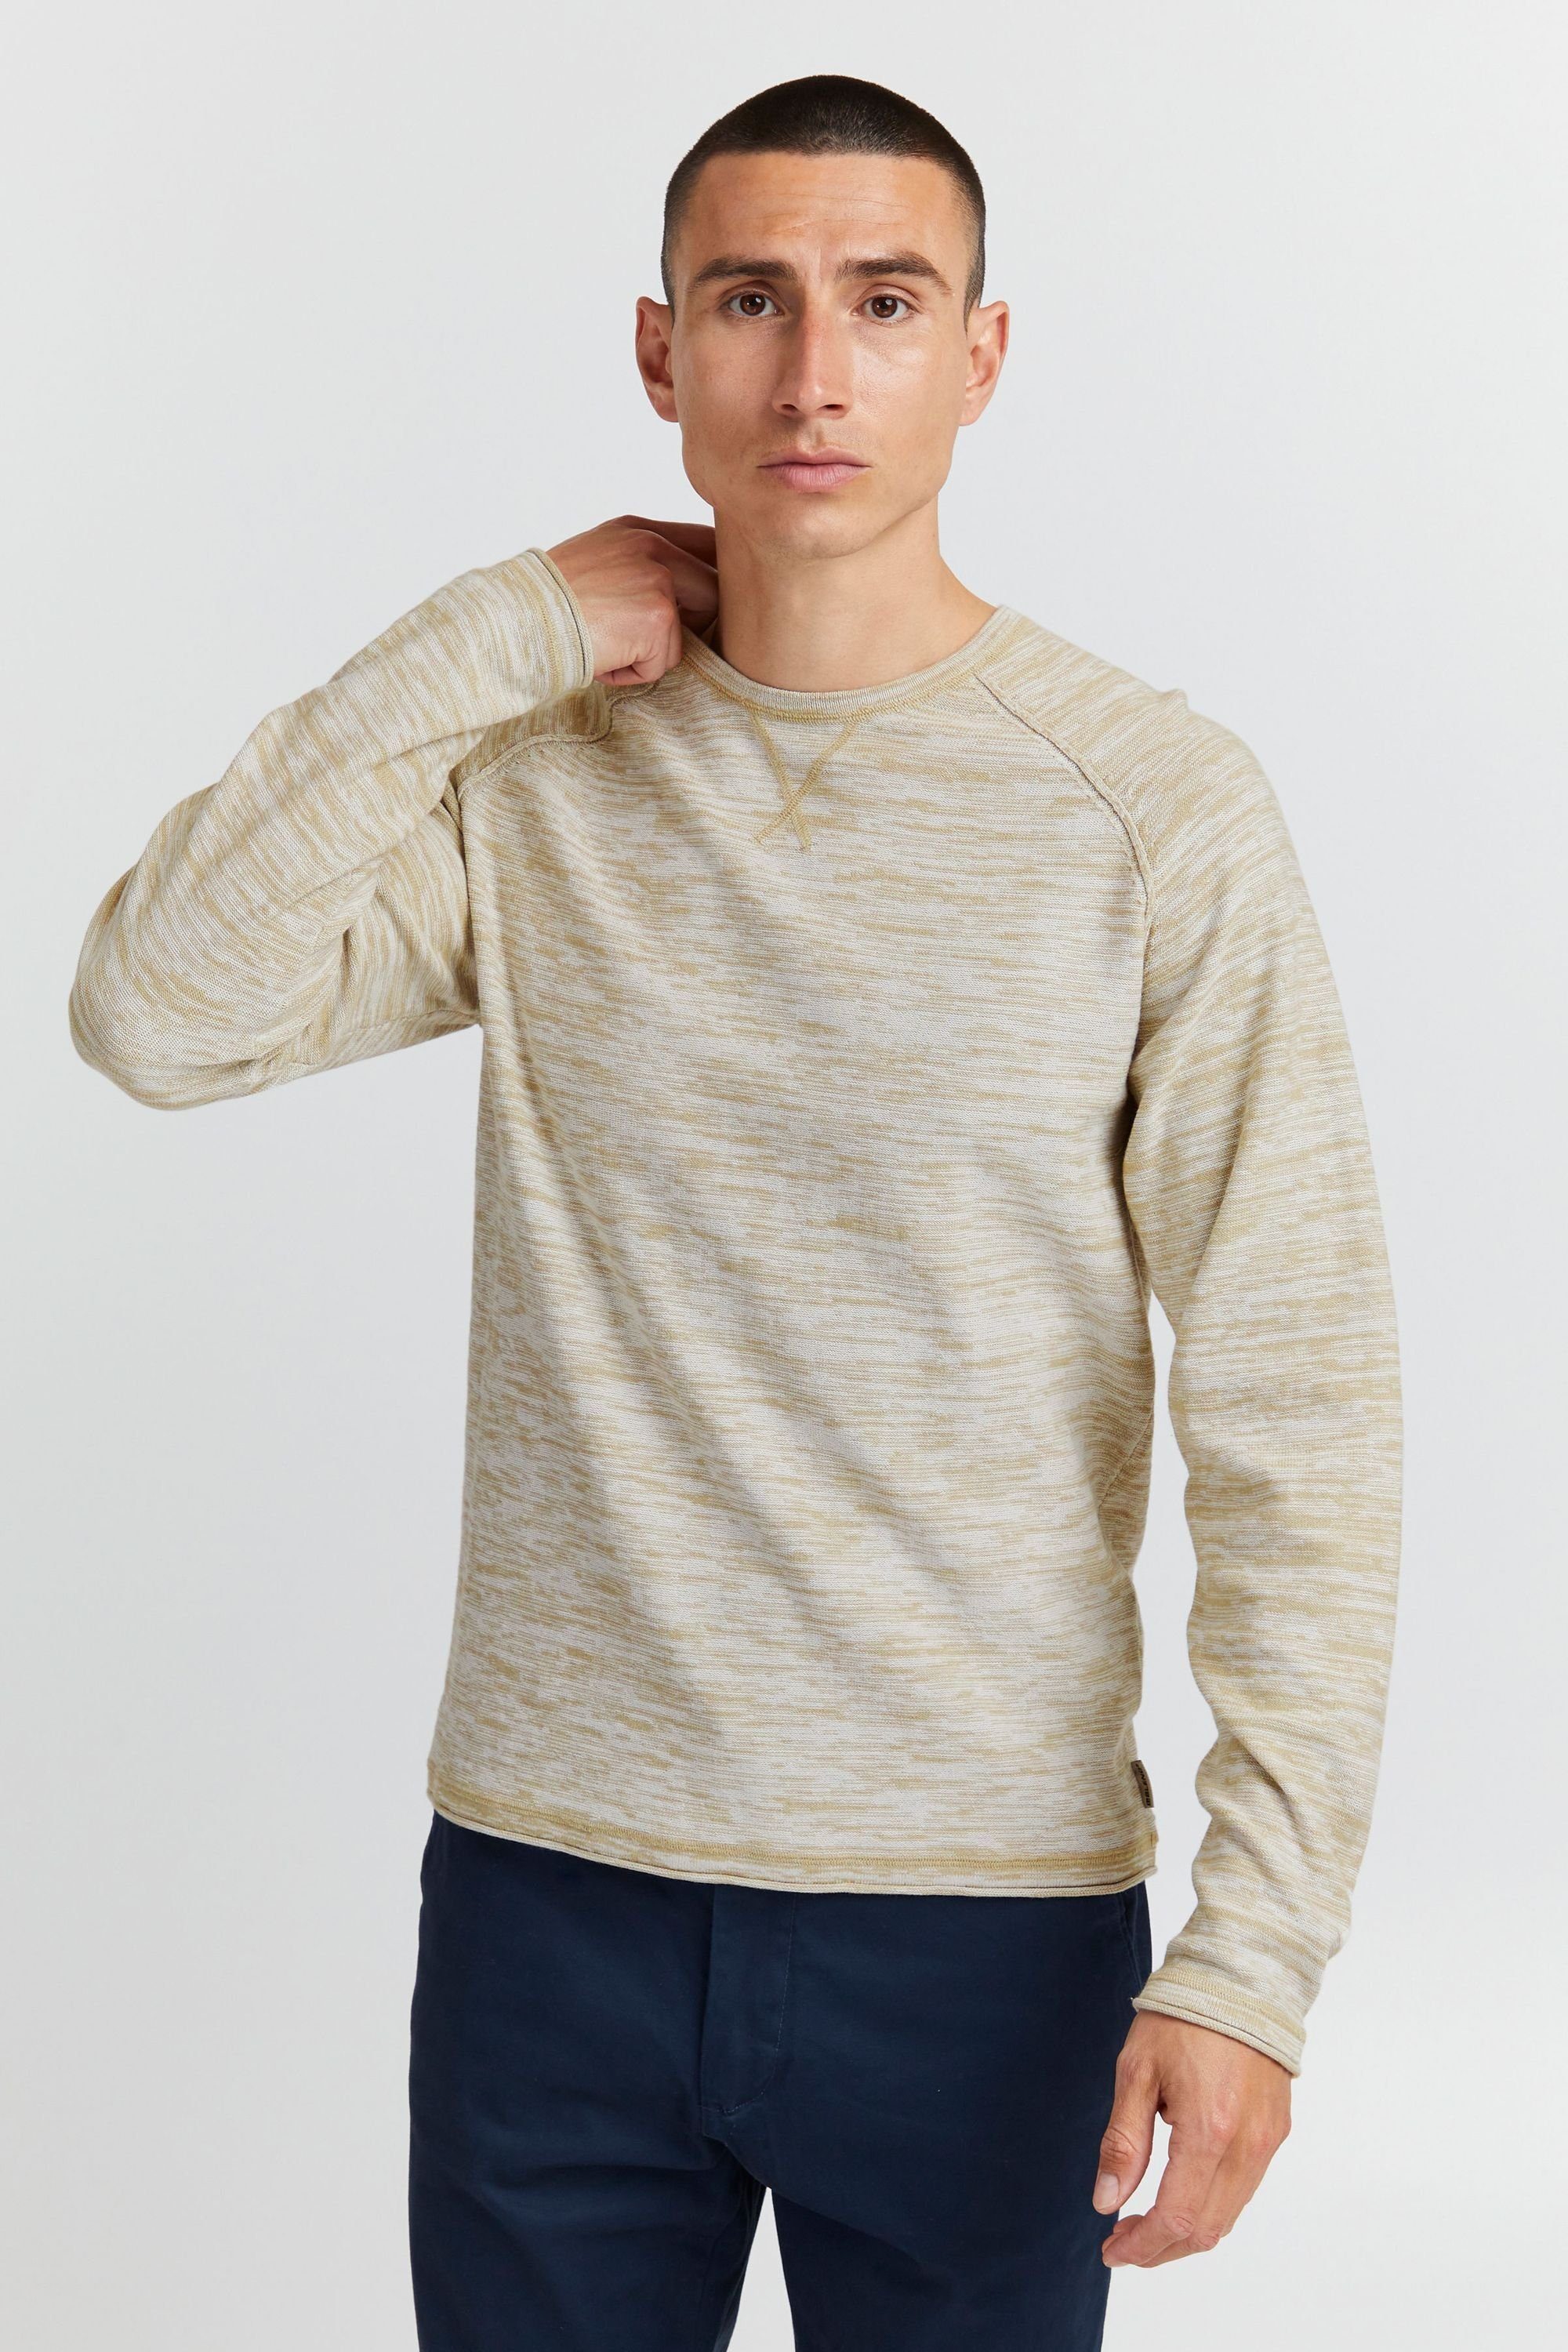 Freizeit oder der Look im Blend einen BLEND Pullover, Für Job modernen in Strickpullover